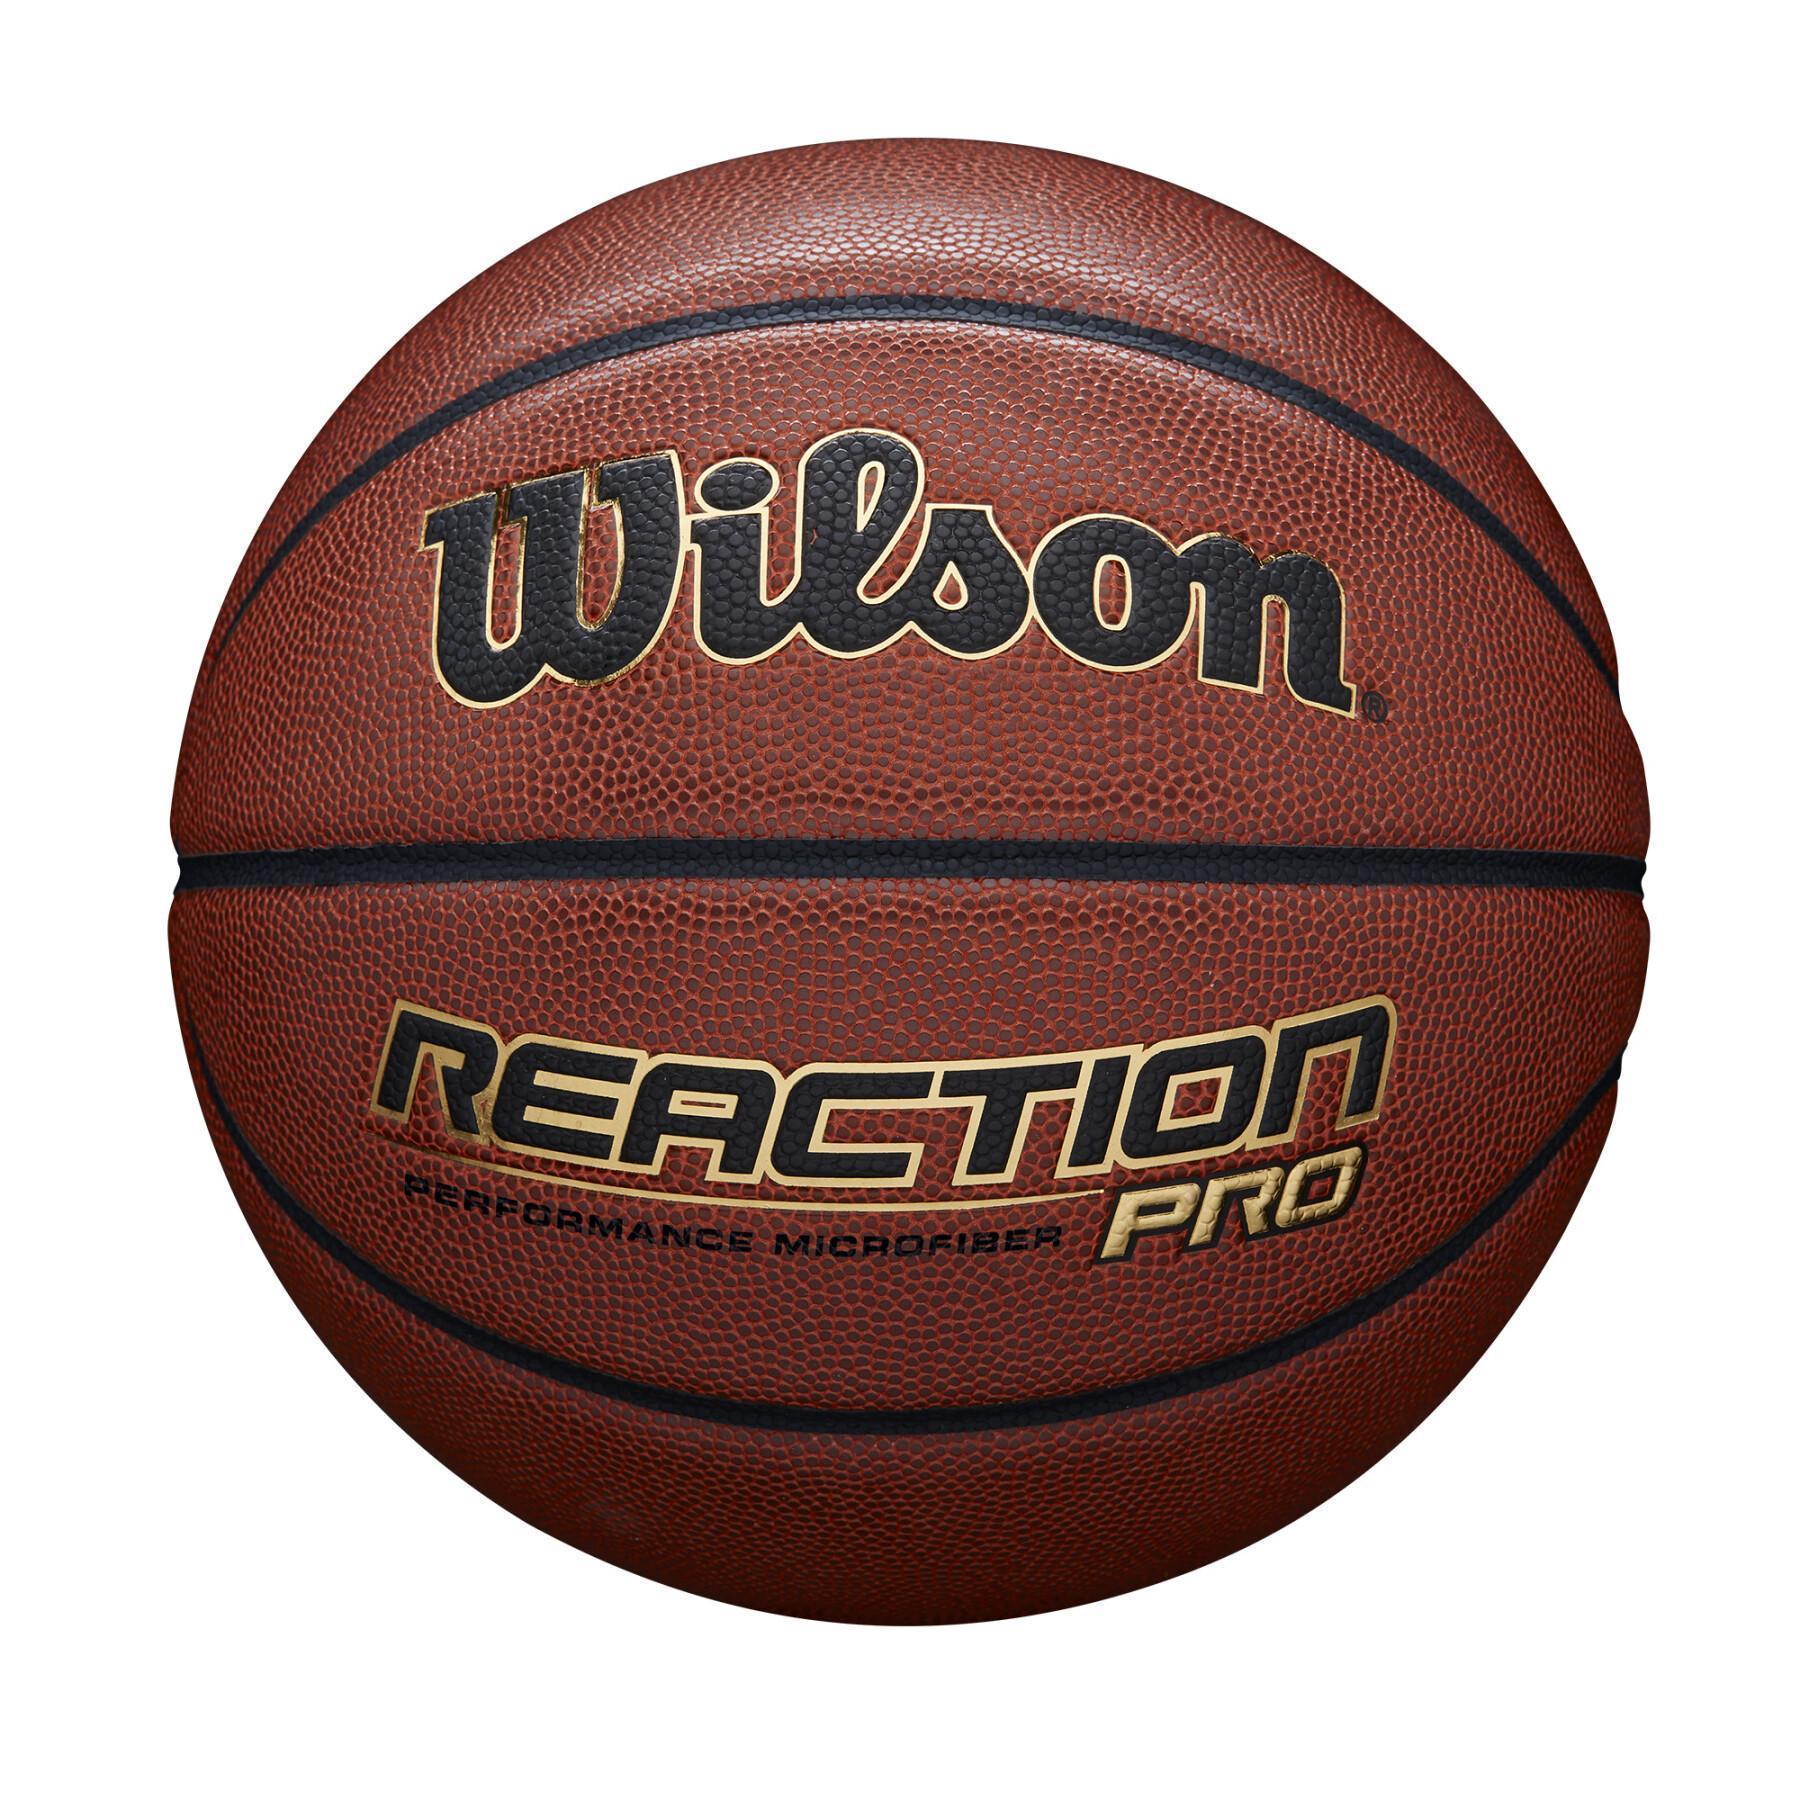 ReaktionsBasketball pro Wilson